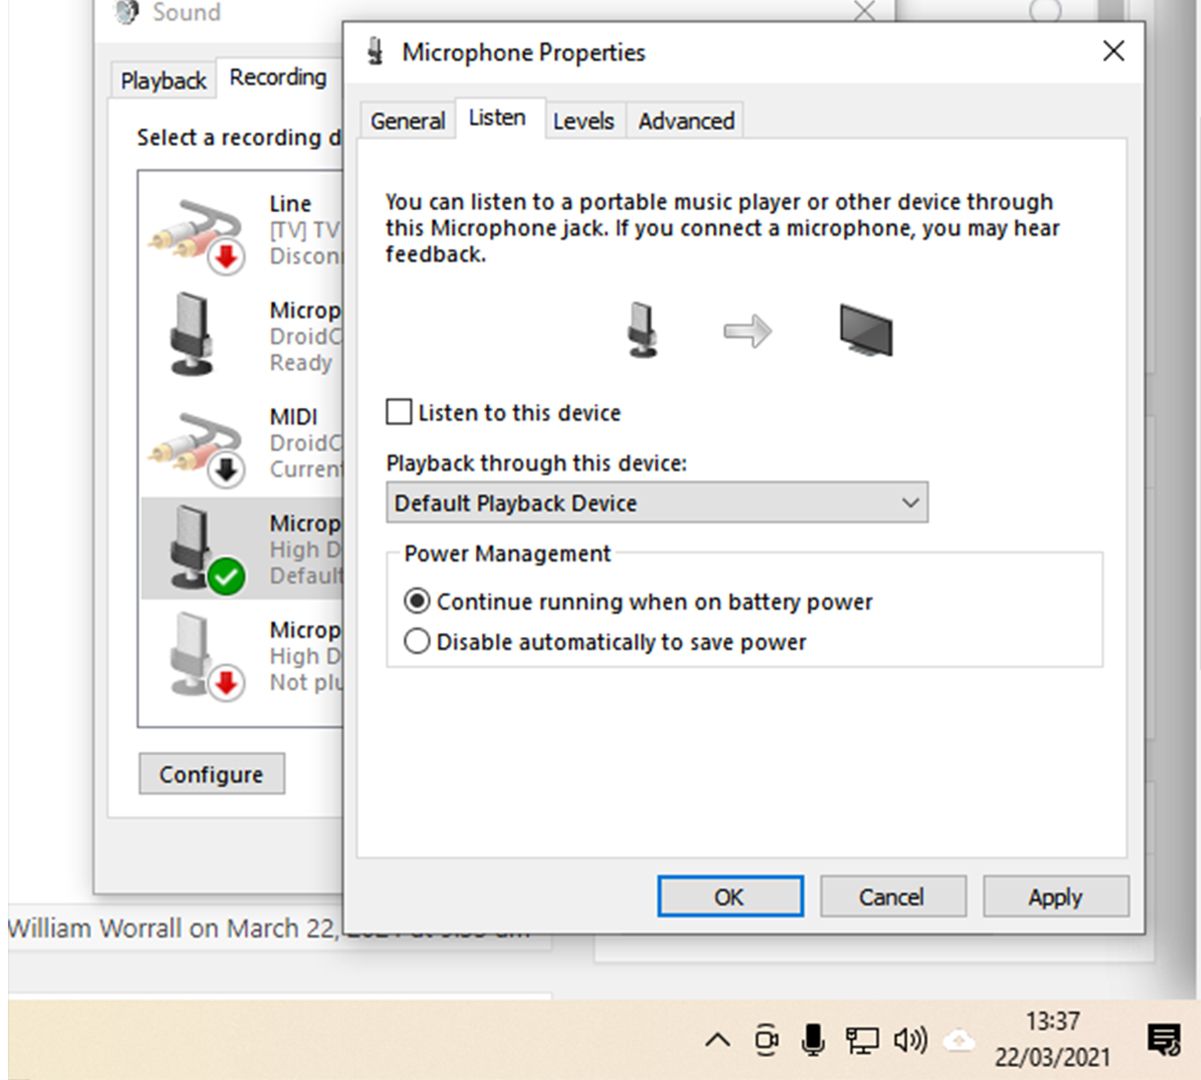 microphone properties screenshot - Come risolvere il loop di feedback audio del microfono in Windows 10